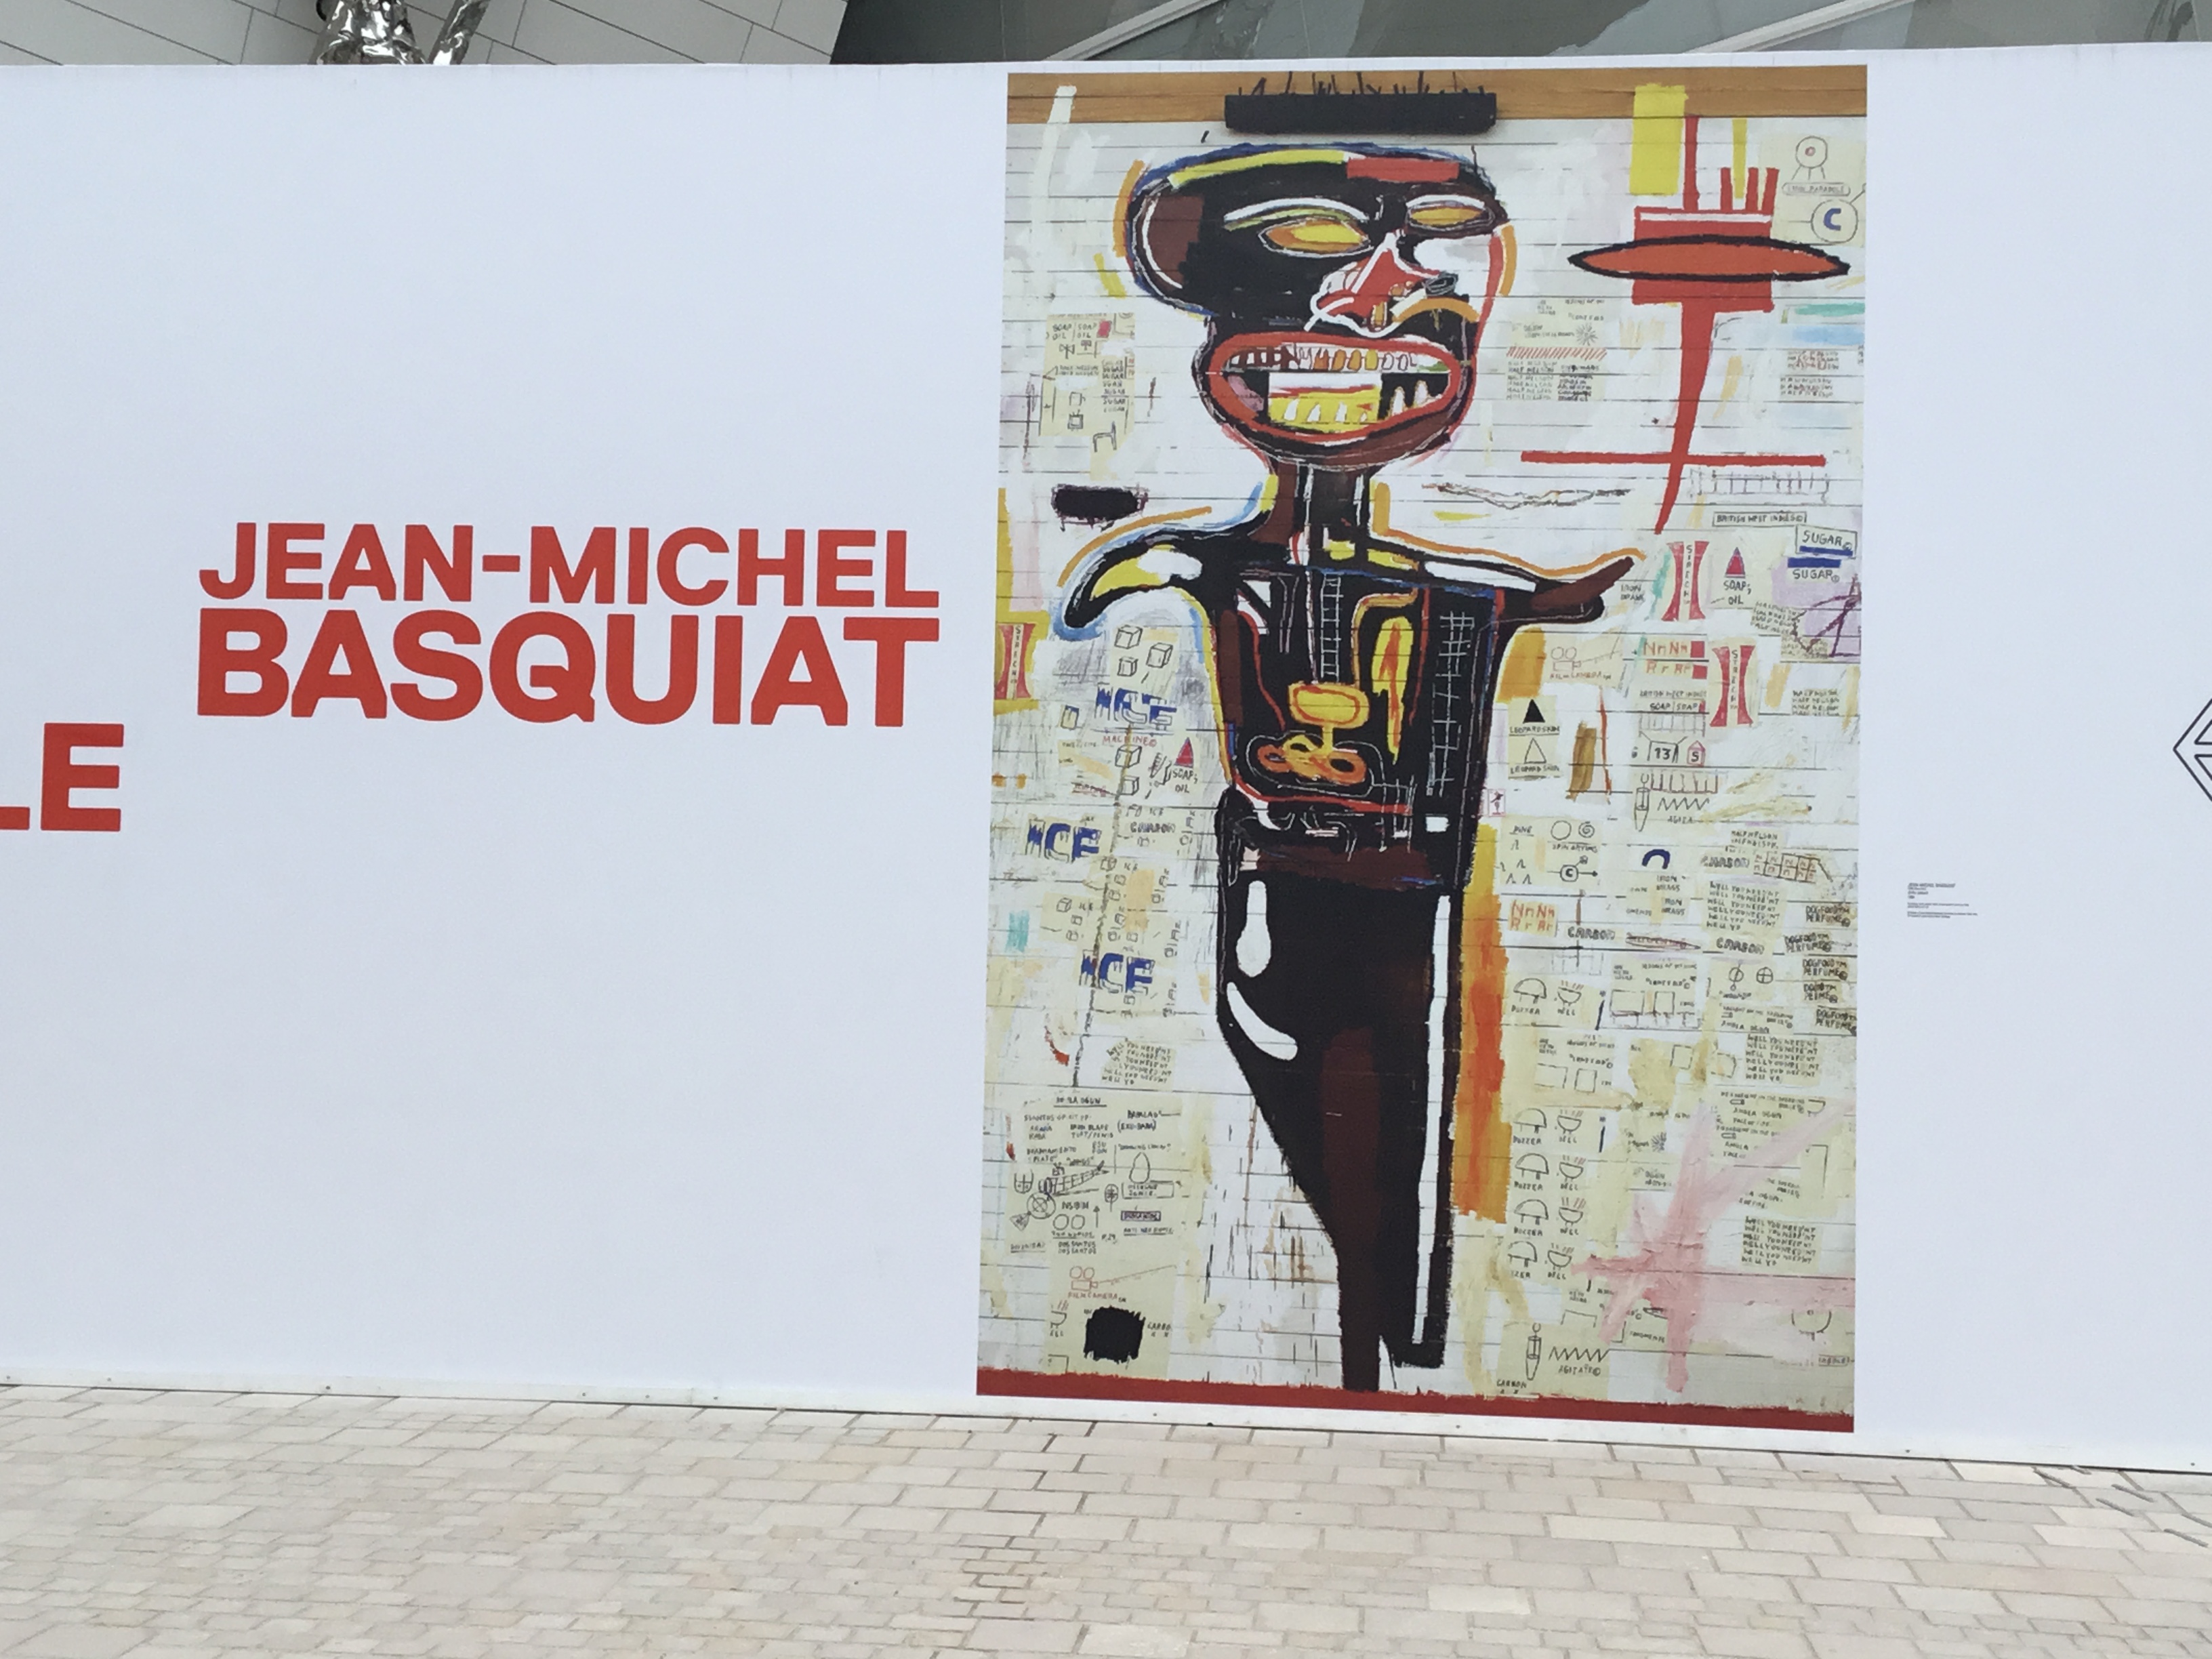 2019 déambulation culturelle (1) : Jean-Michel Basquiat – Fondation Louis Vuitton- Exposition en cours – Du 3 octobre 2018 au 21 janvier 2019